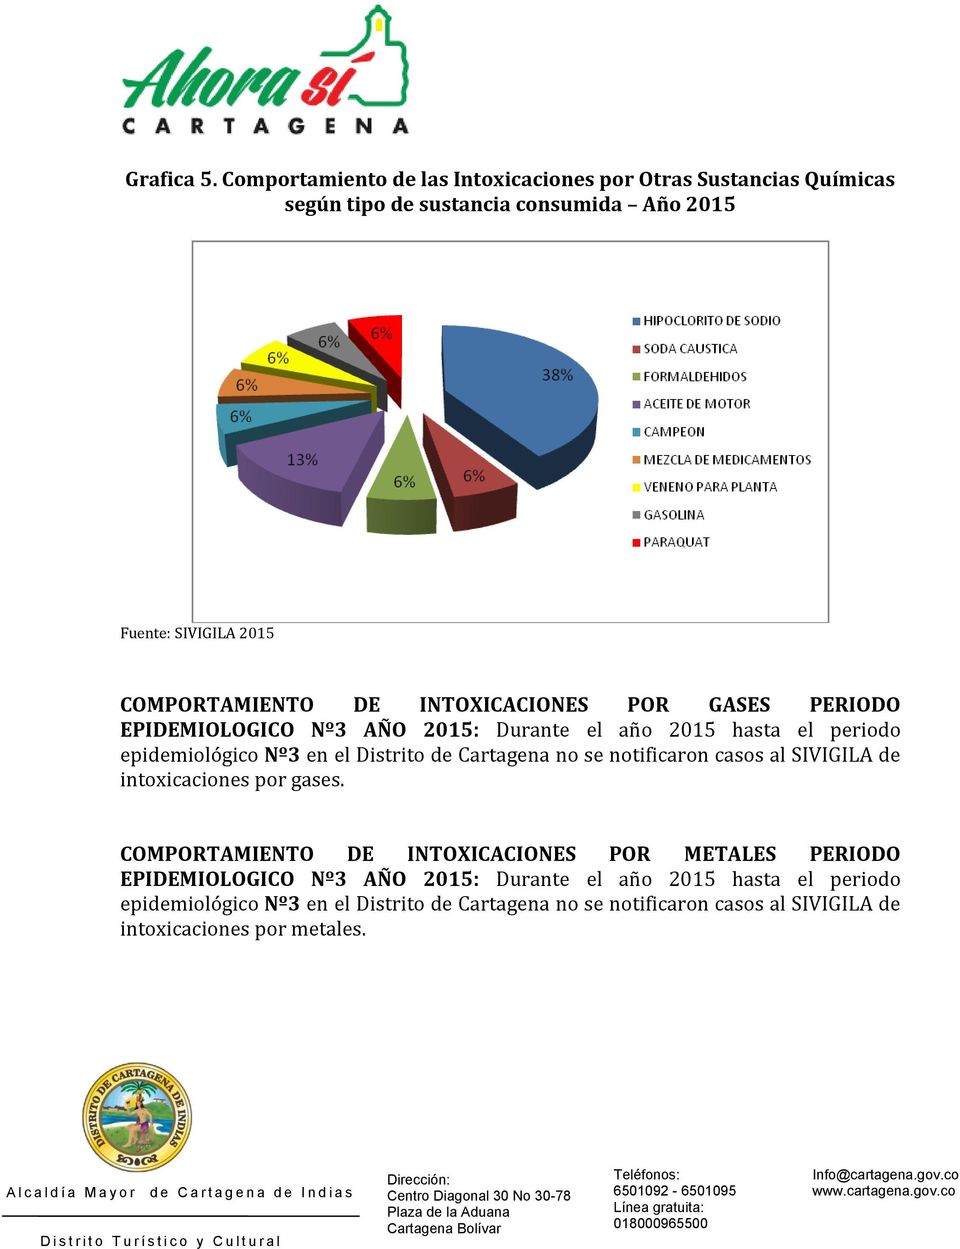 POR GASES PERIODO EPIDEMIOLOGICO Nº3 AÑO 2015: Durante el año 2015 hasta el periodo epidemiológico Nº3 en el Distrito de Cartagena no se